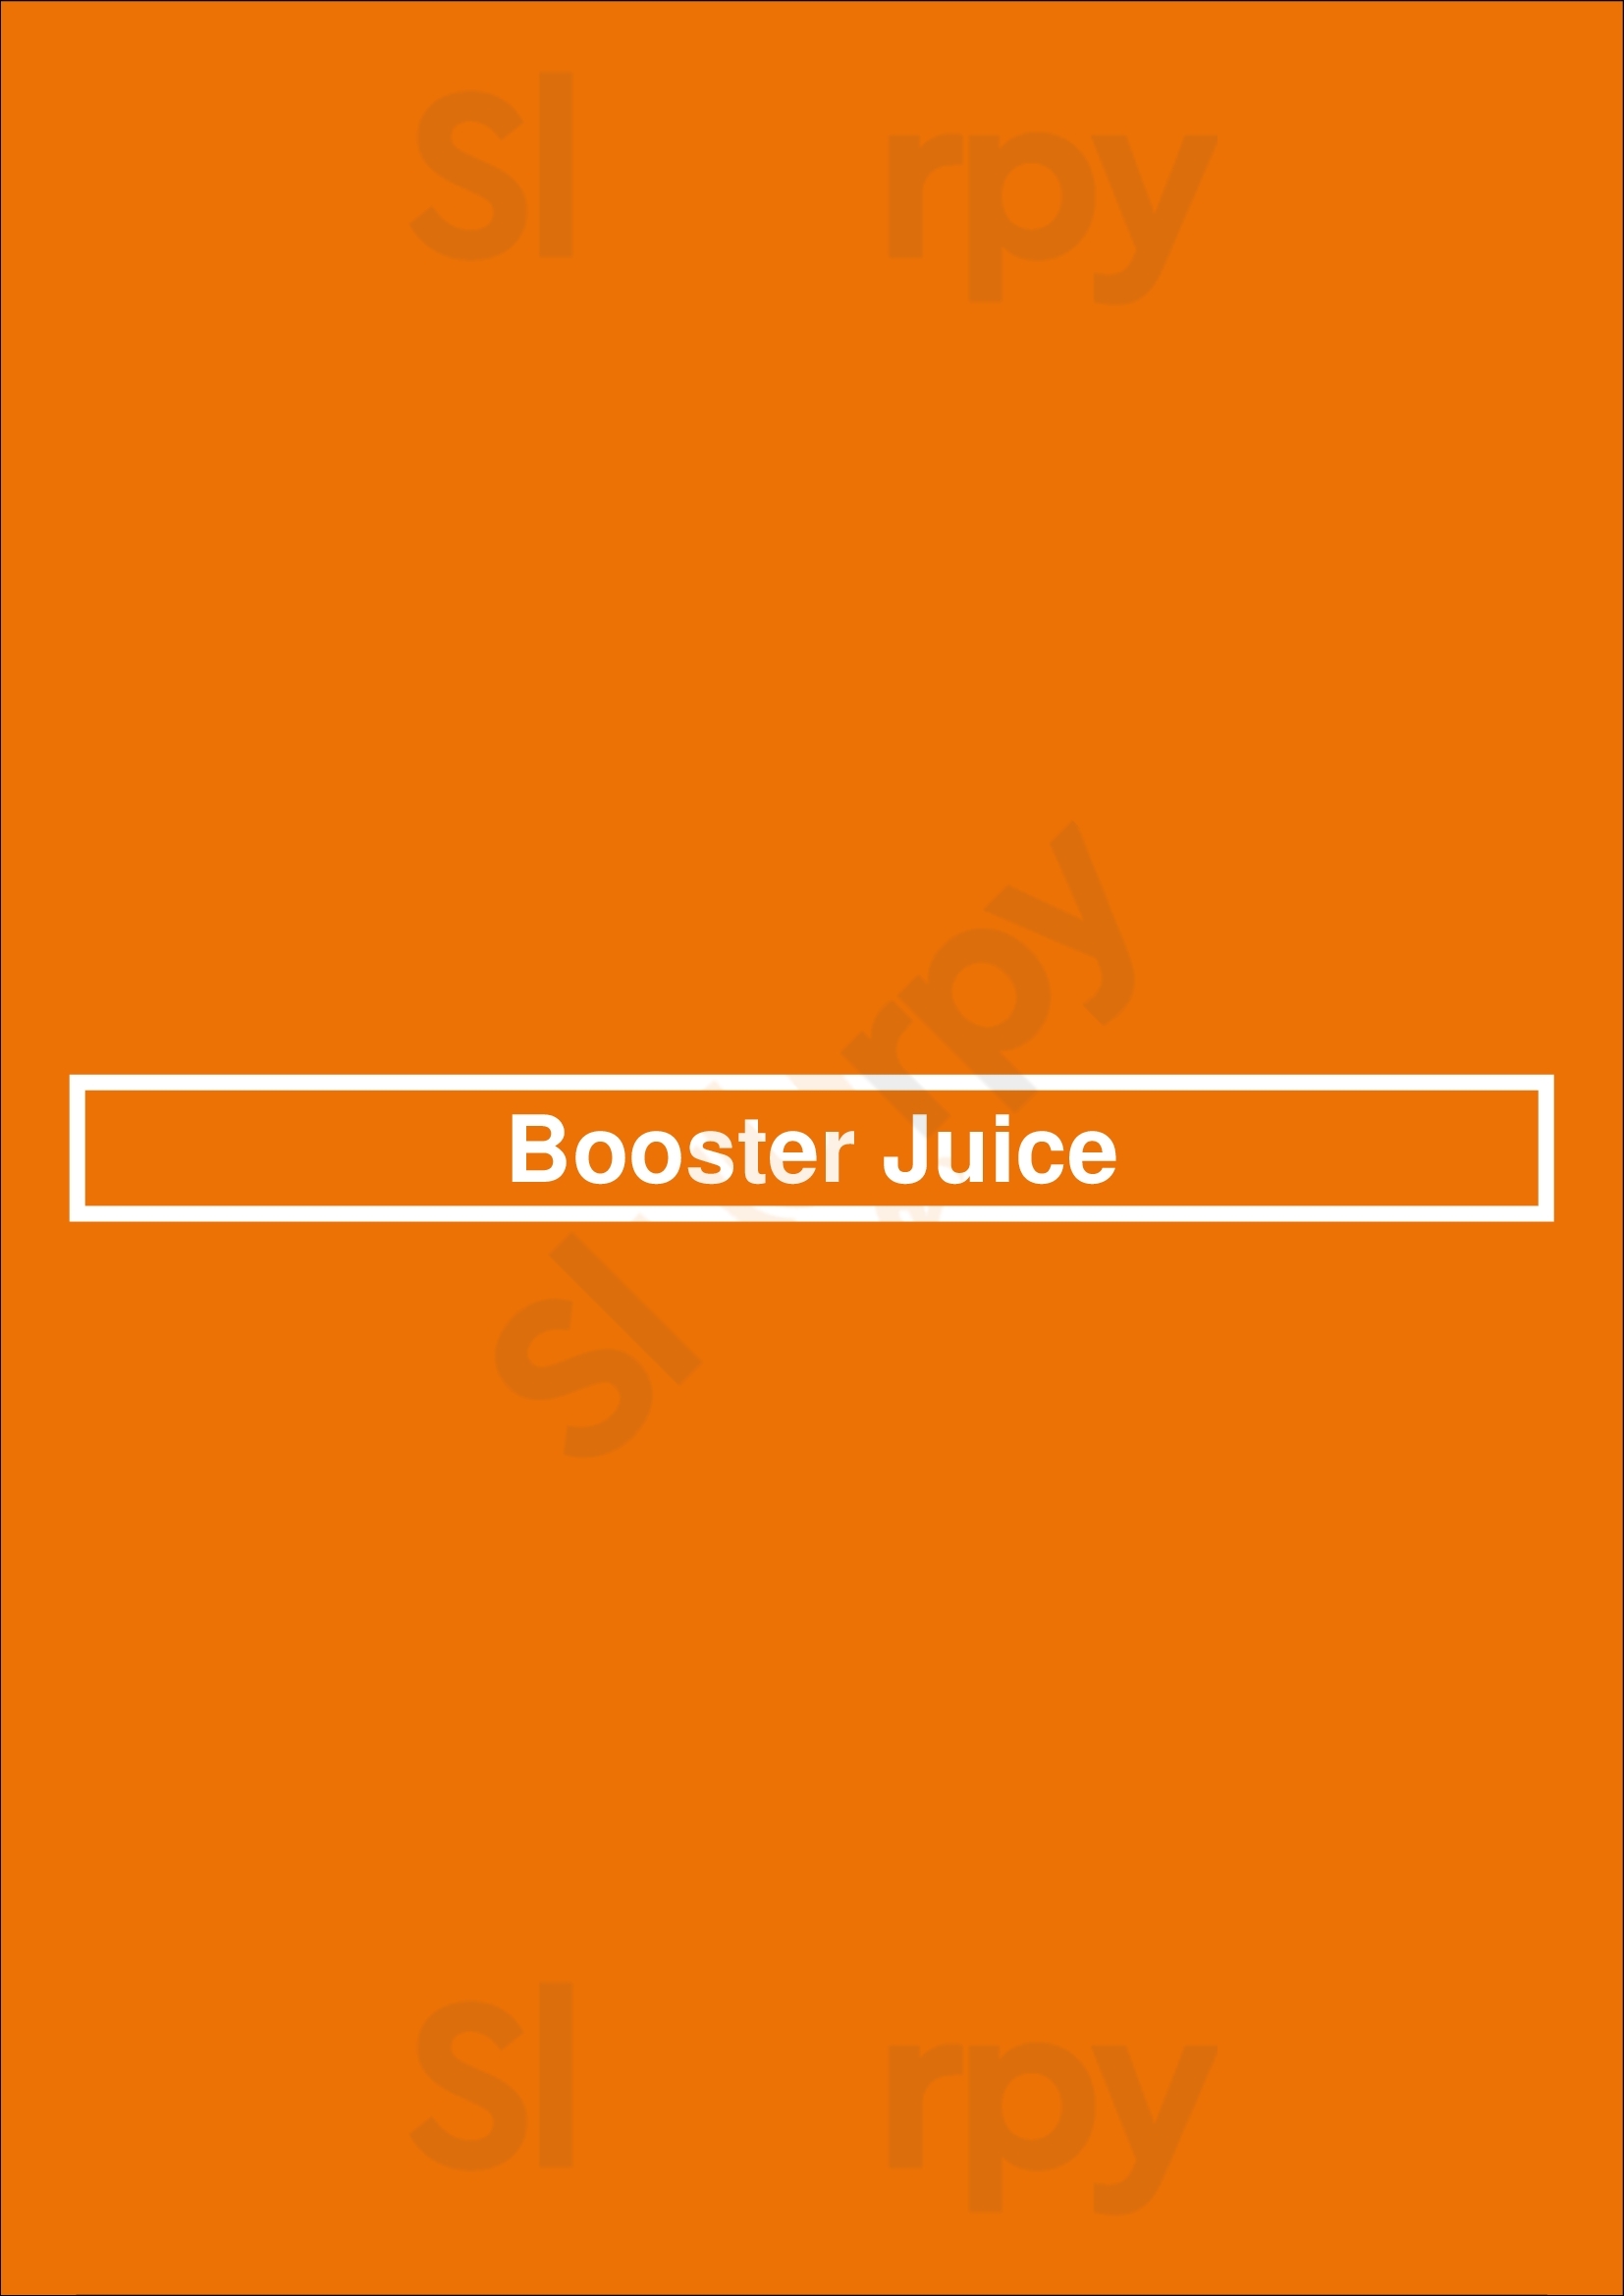 Booster Juice Edmonton Menu - 1